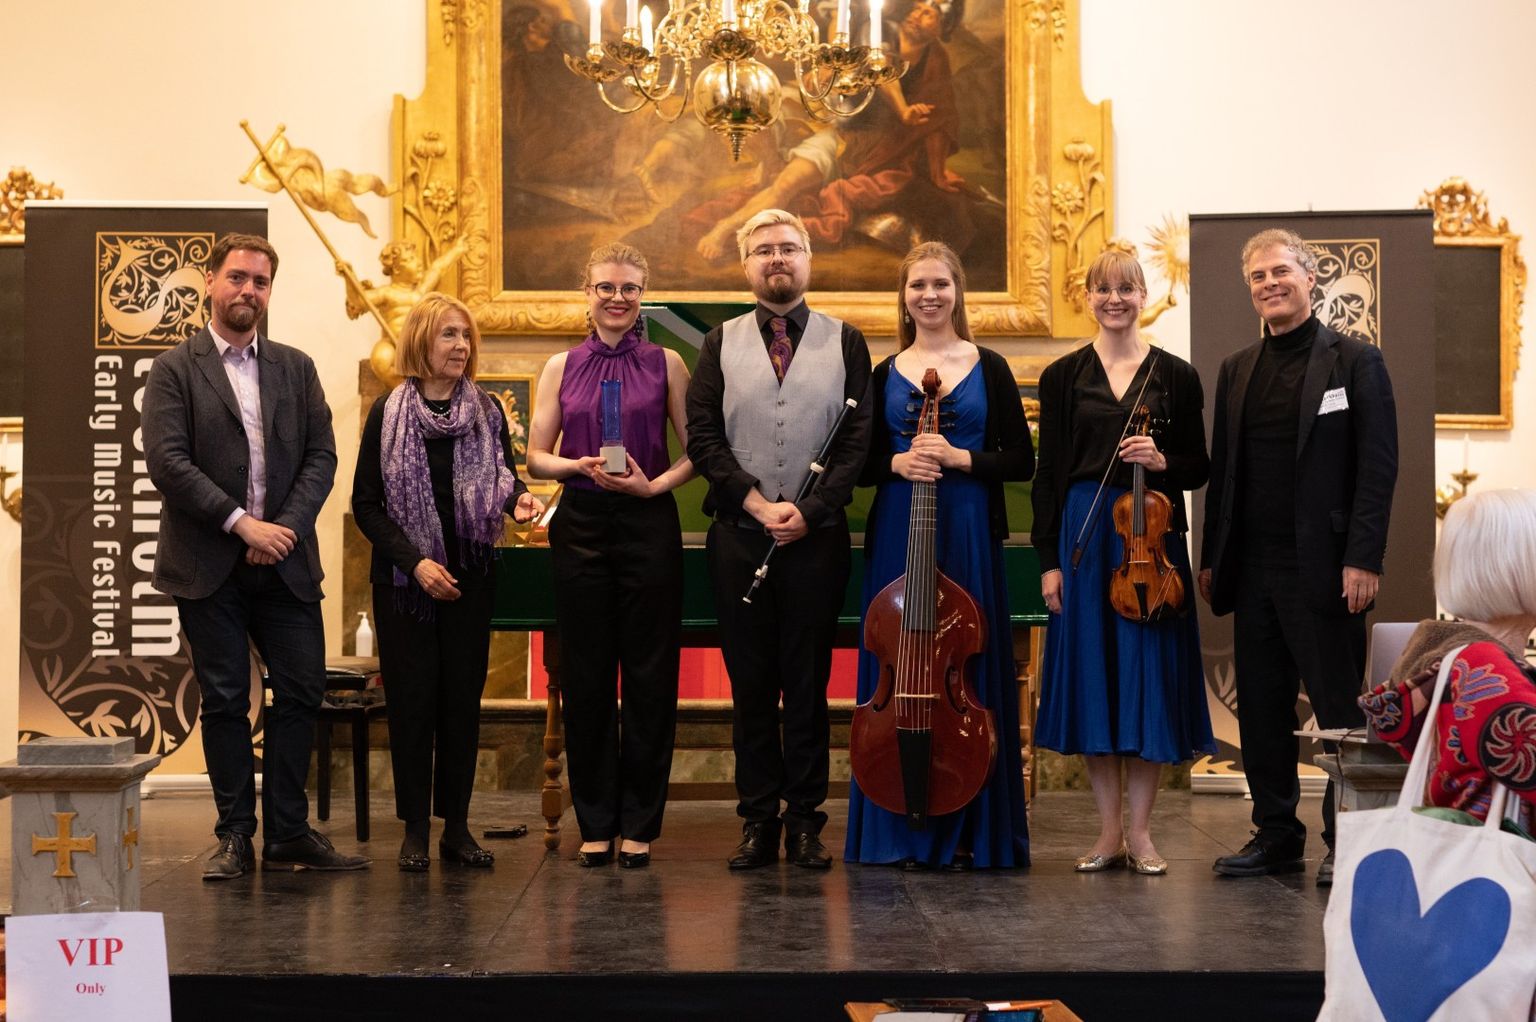 Tšellist Johanna Randvere sai Soome ansambli Æstus kooseisus Rootsi vanamuusikakonkursil esimese koha.